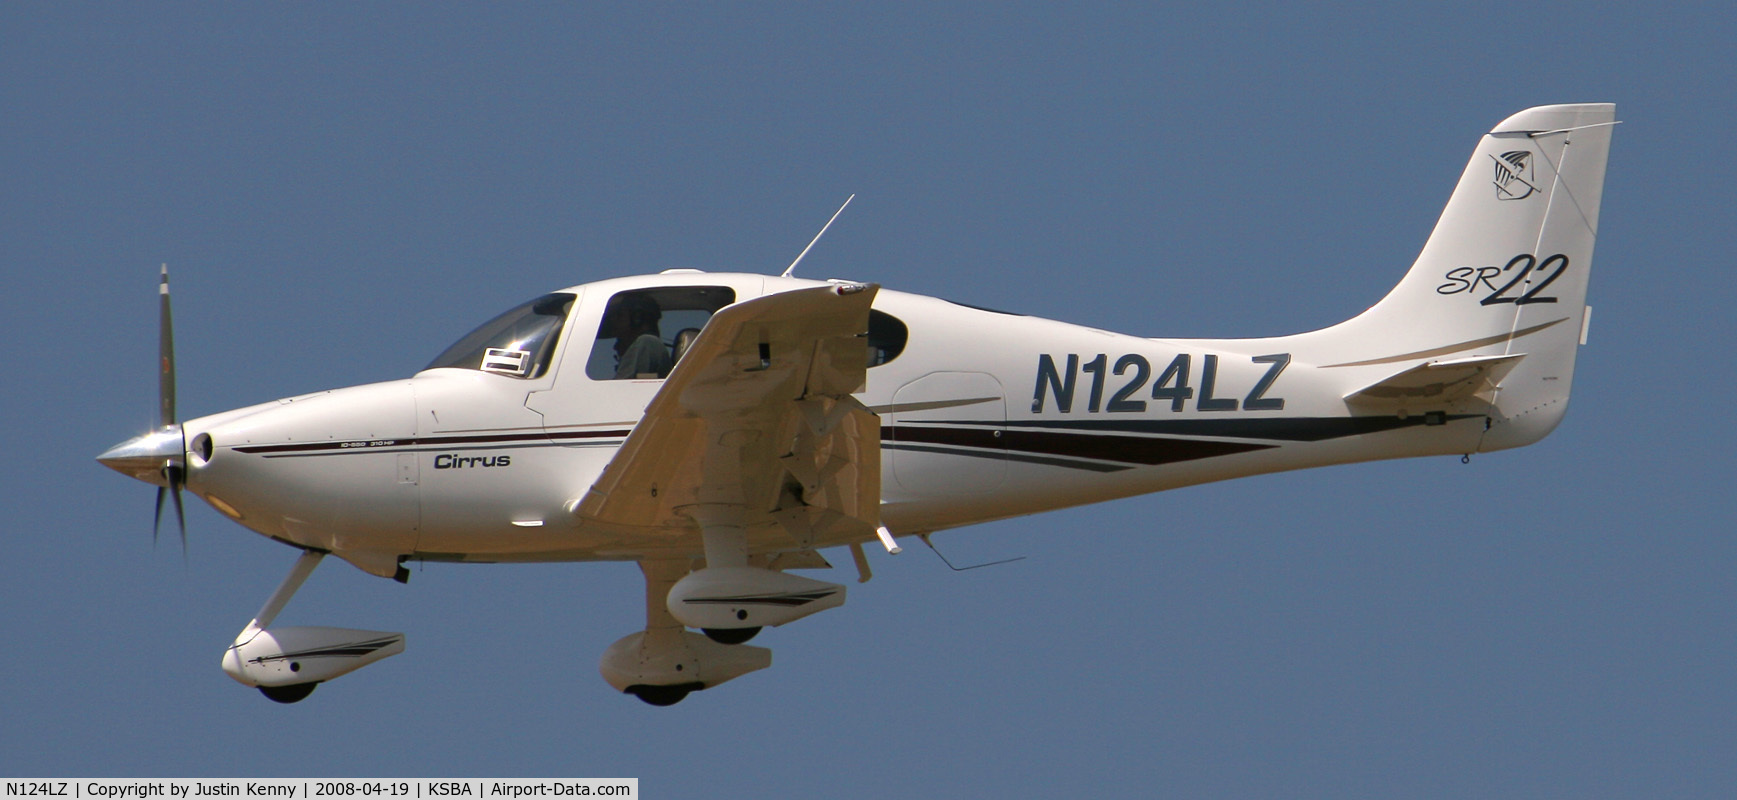 N124LZ, 2002 Cirrus SR22 C/N 0267, N124LZ Landing on runway 25 at KSBA